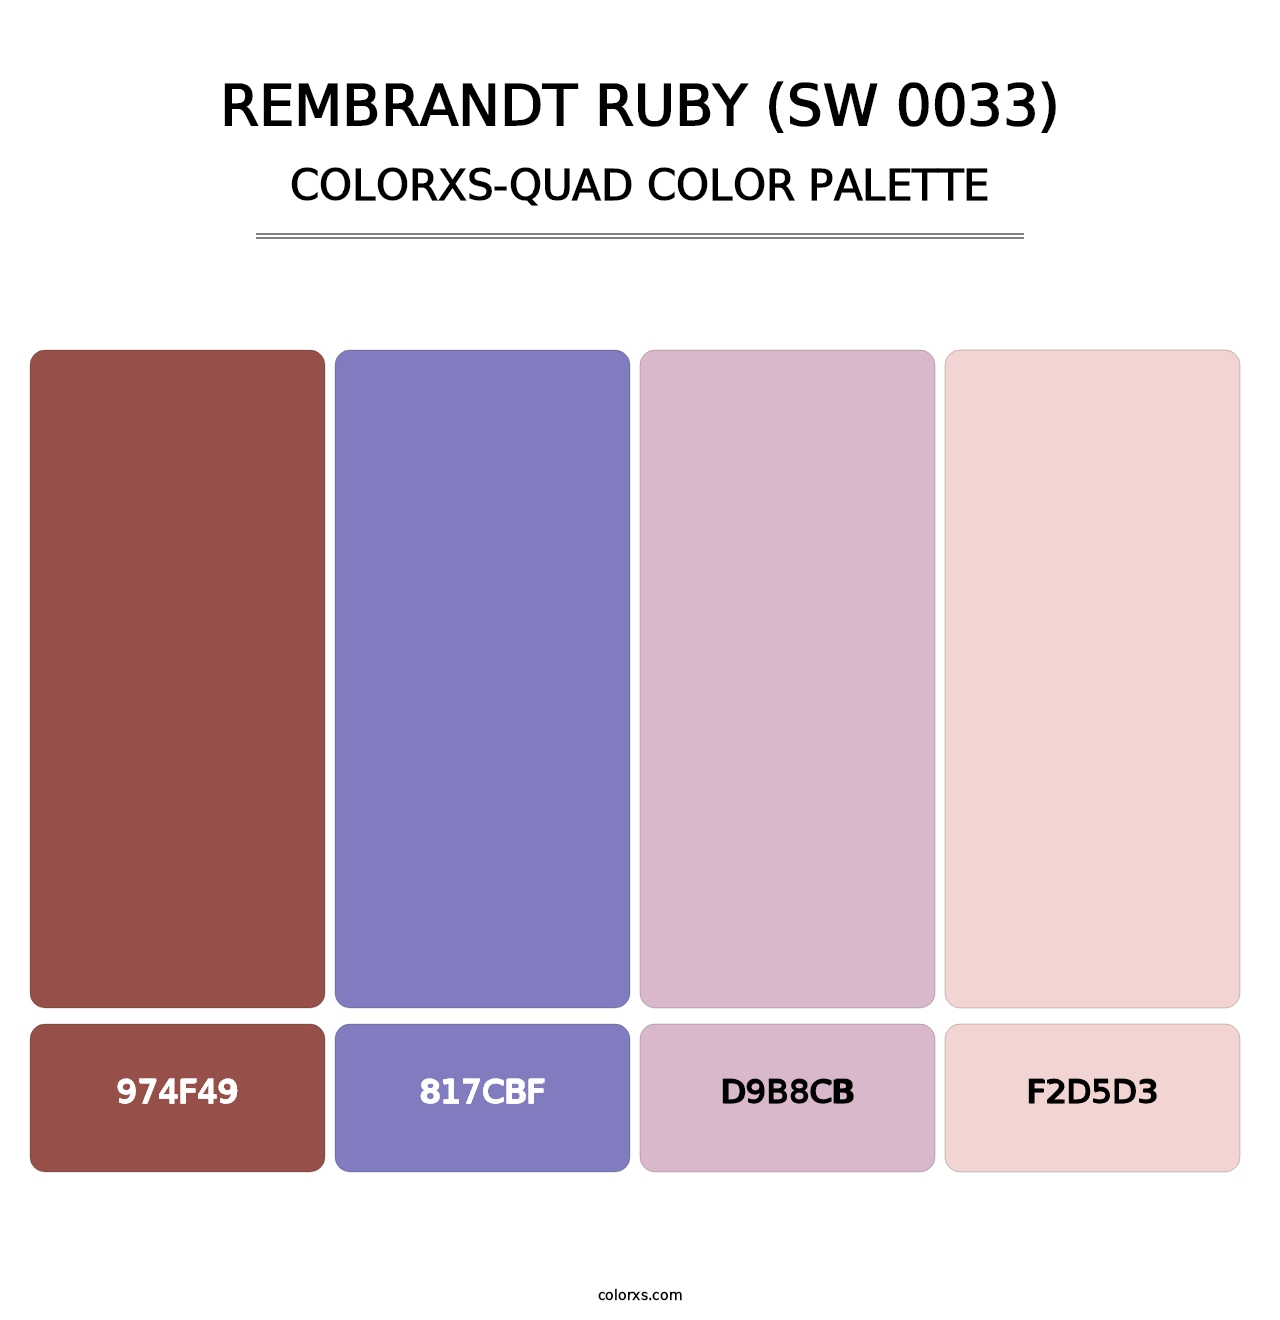 Rembrandt Ruby (SW 0033) - Colorxs Quad Palette